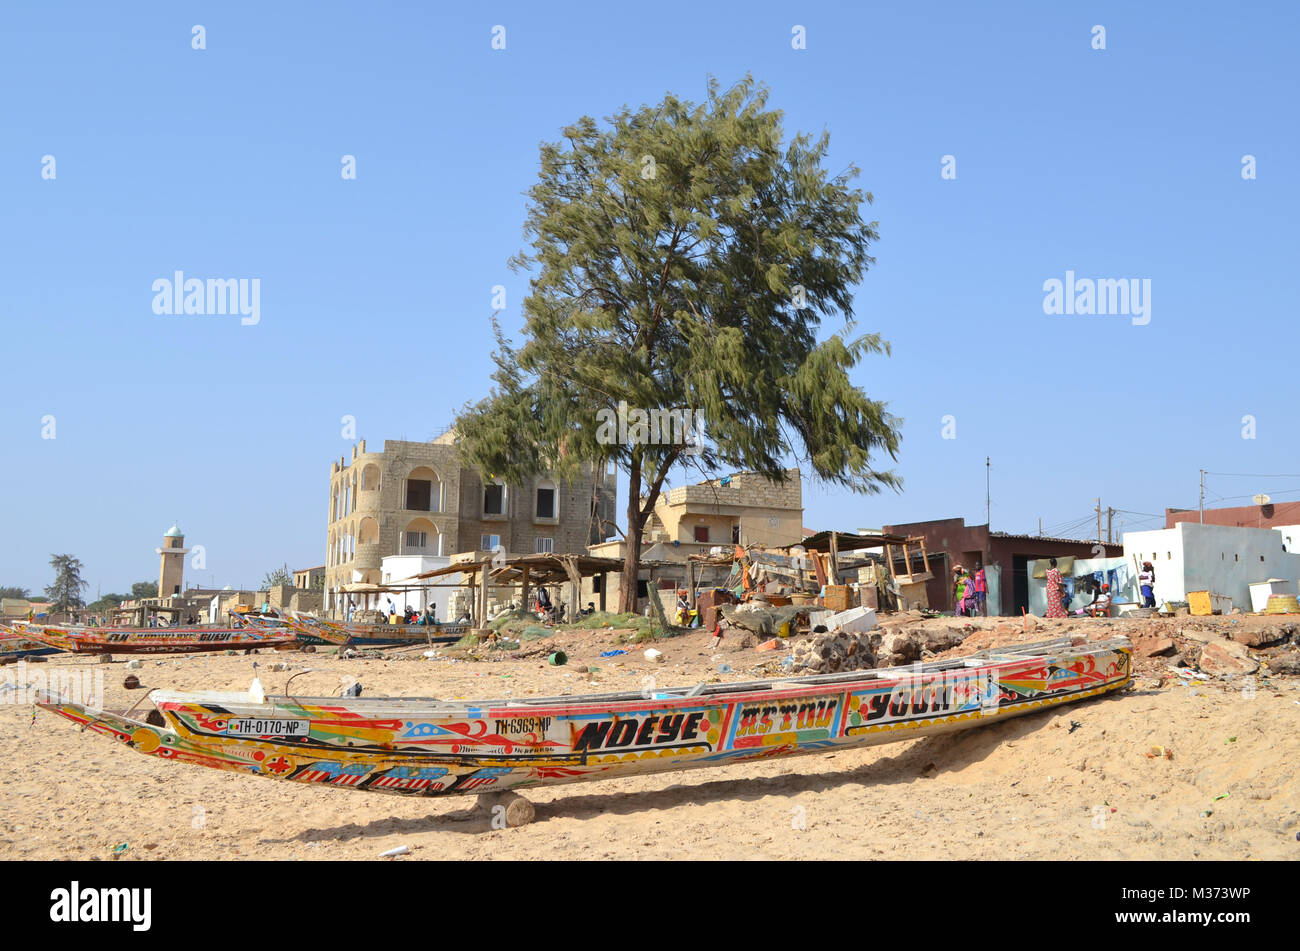 Bateaux de pêche en bois artisanaux (pirogues) dans la Petite Côte, au Sénégal Banque D'Images